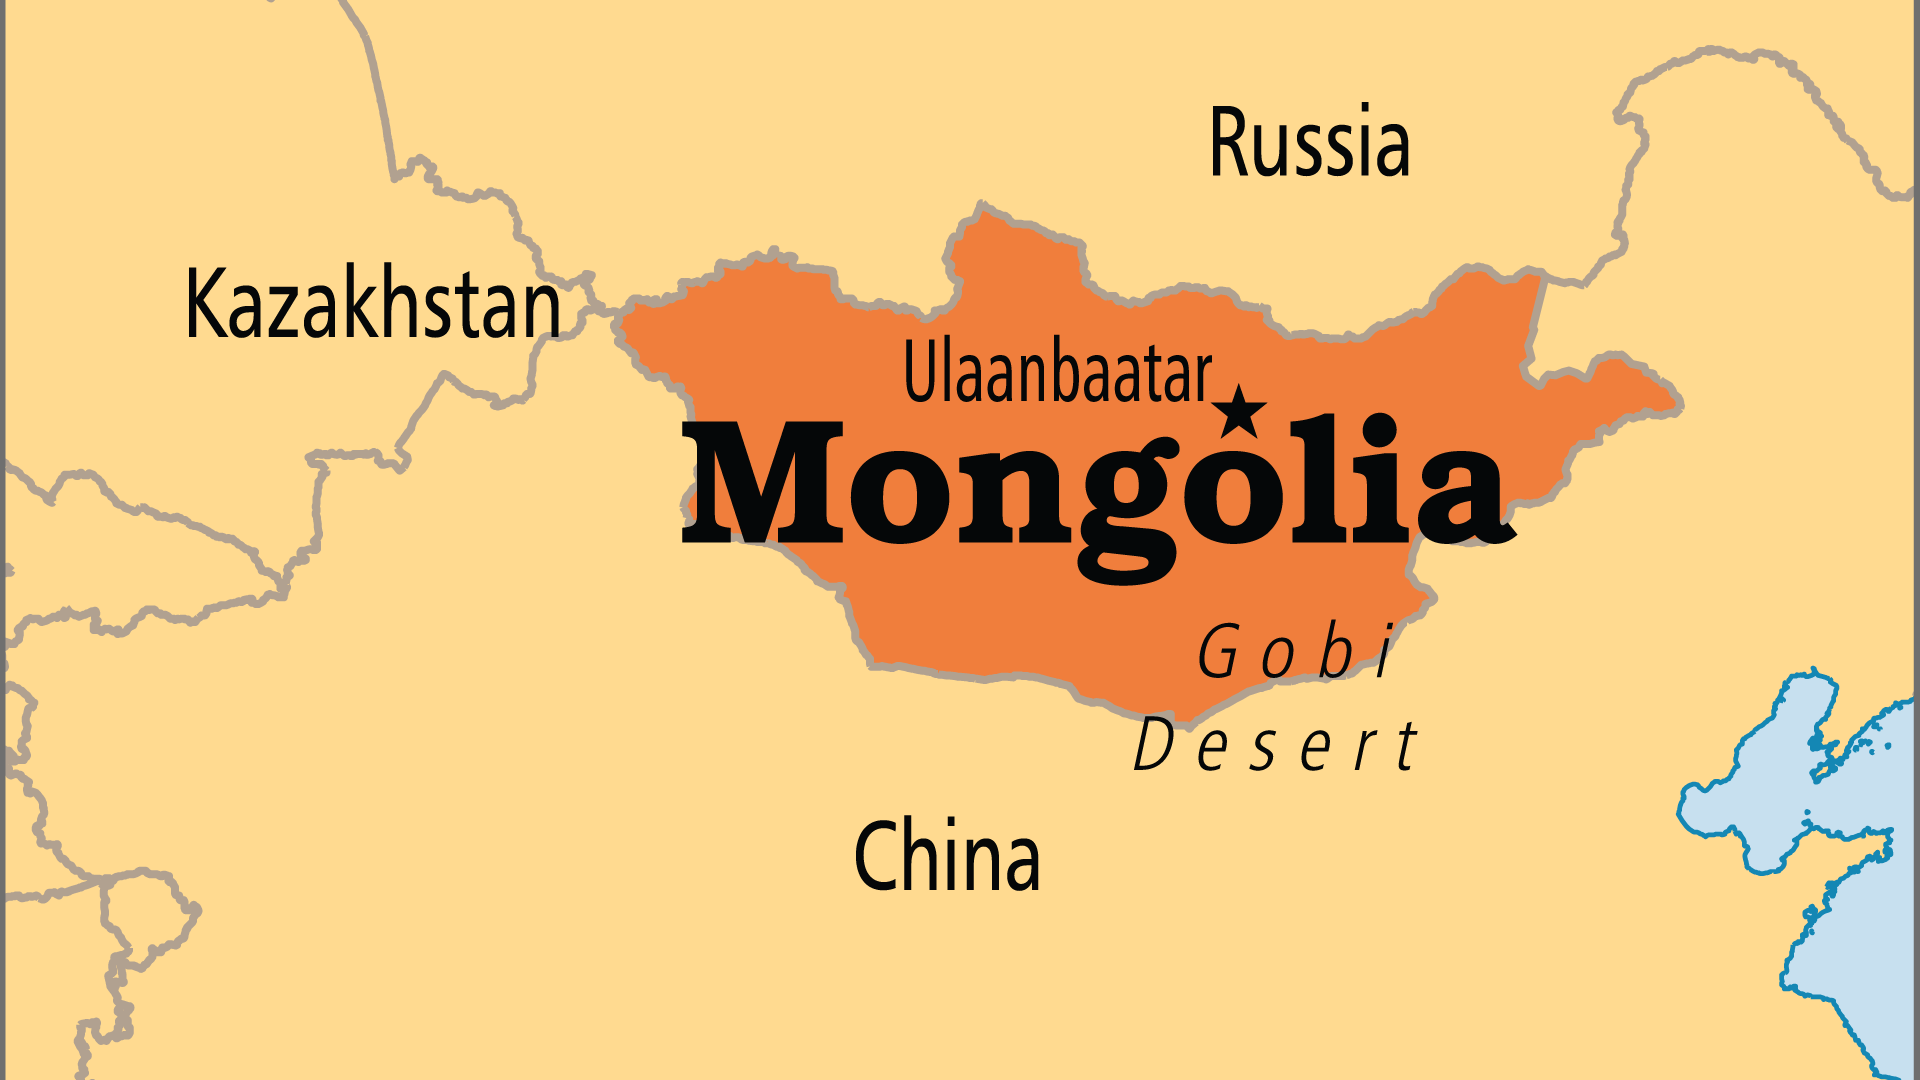 Mongolia (Operation World)